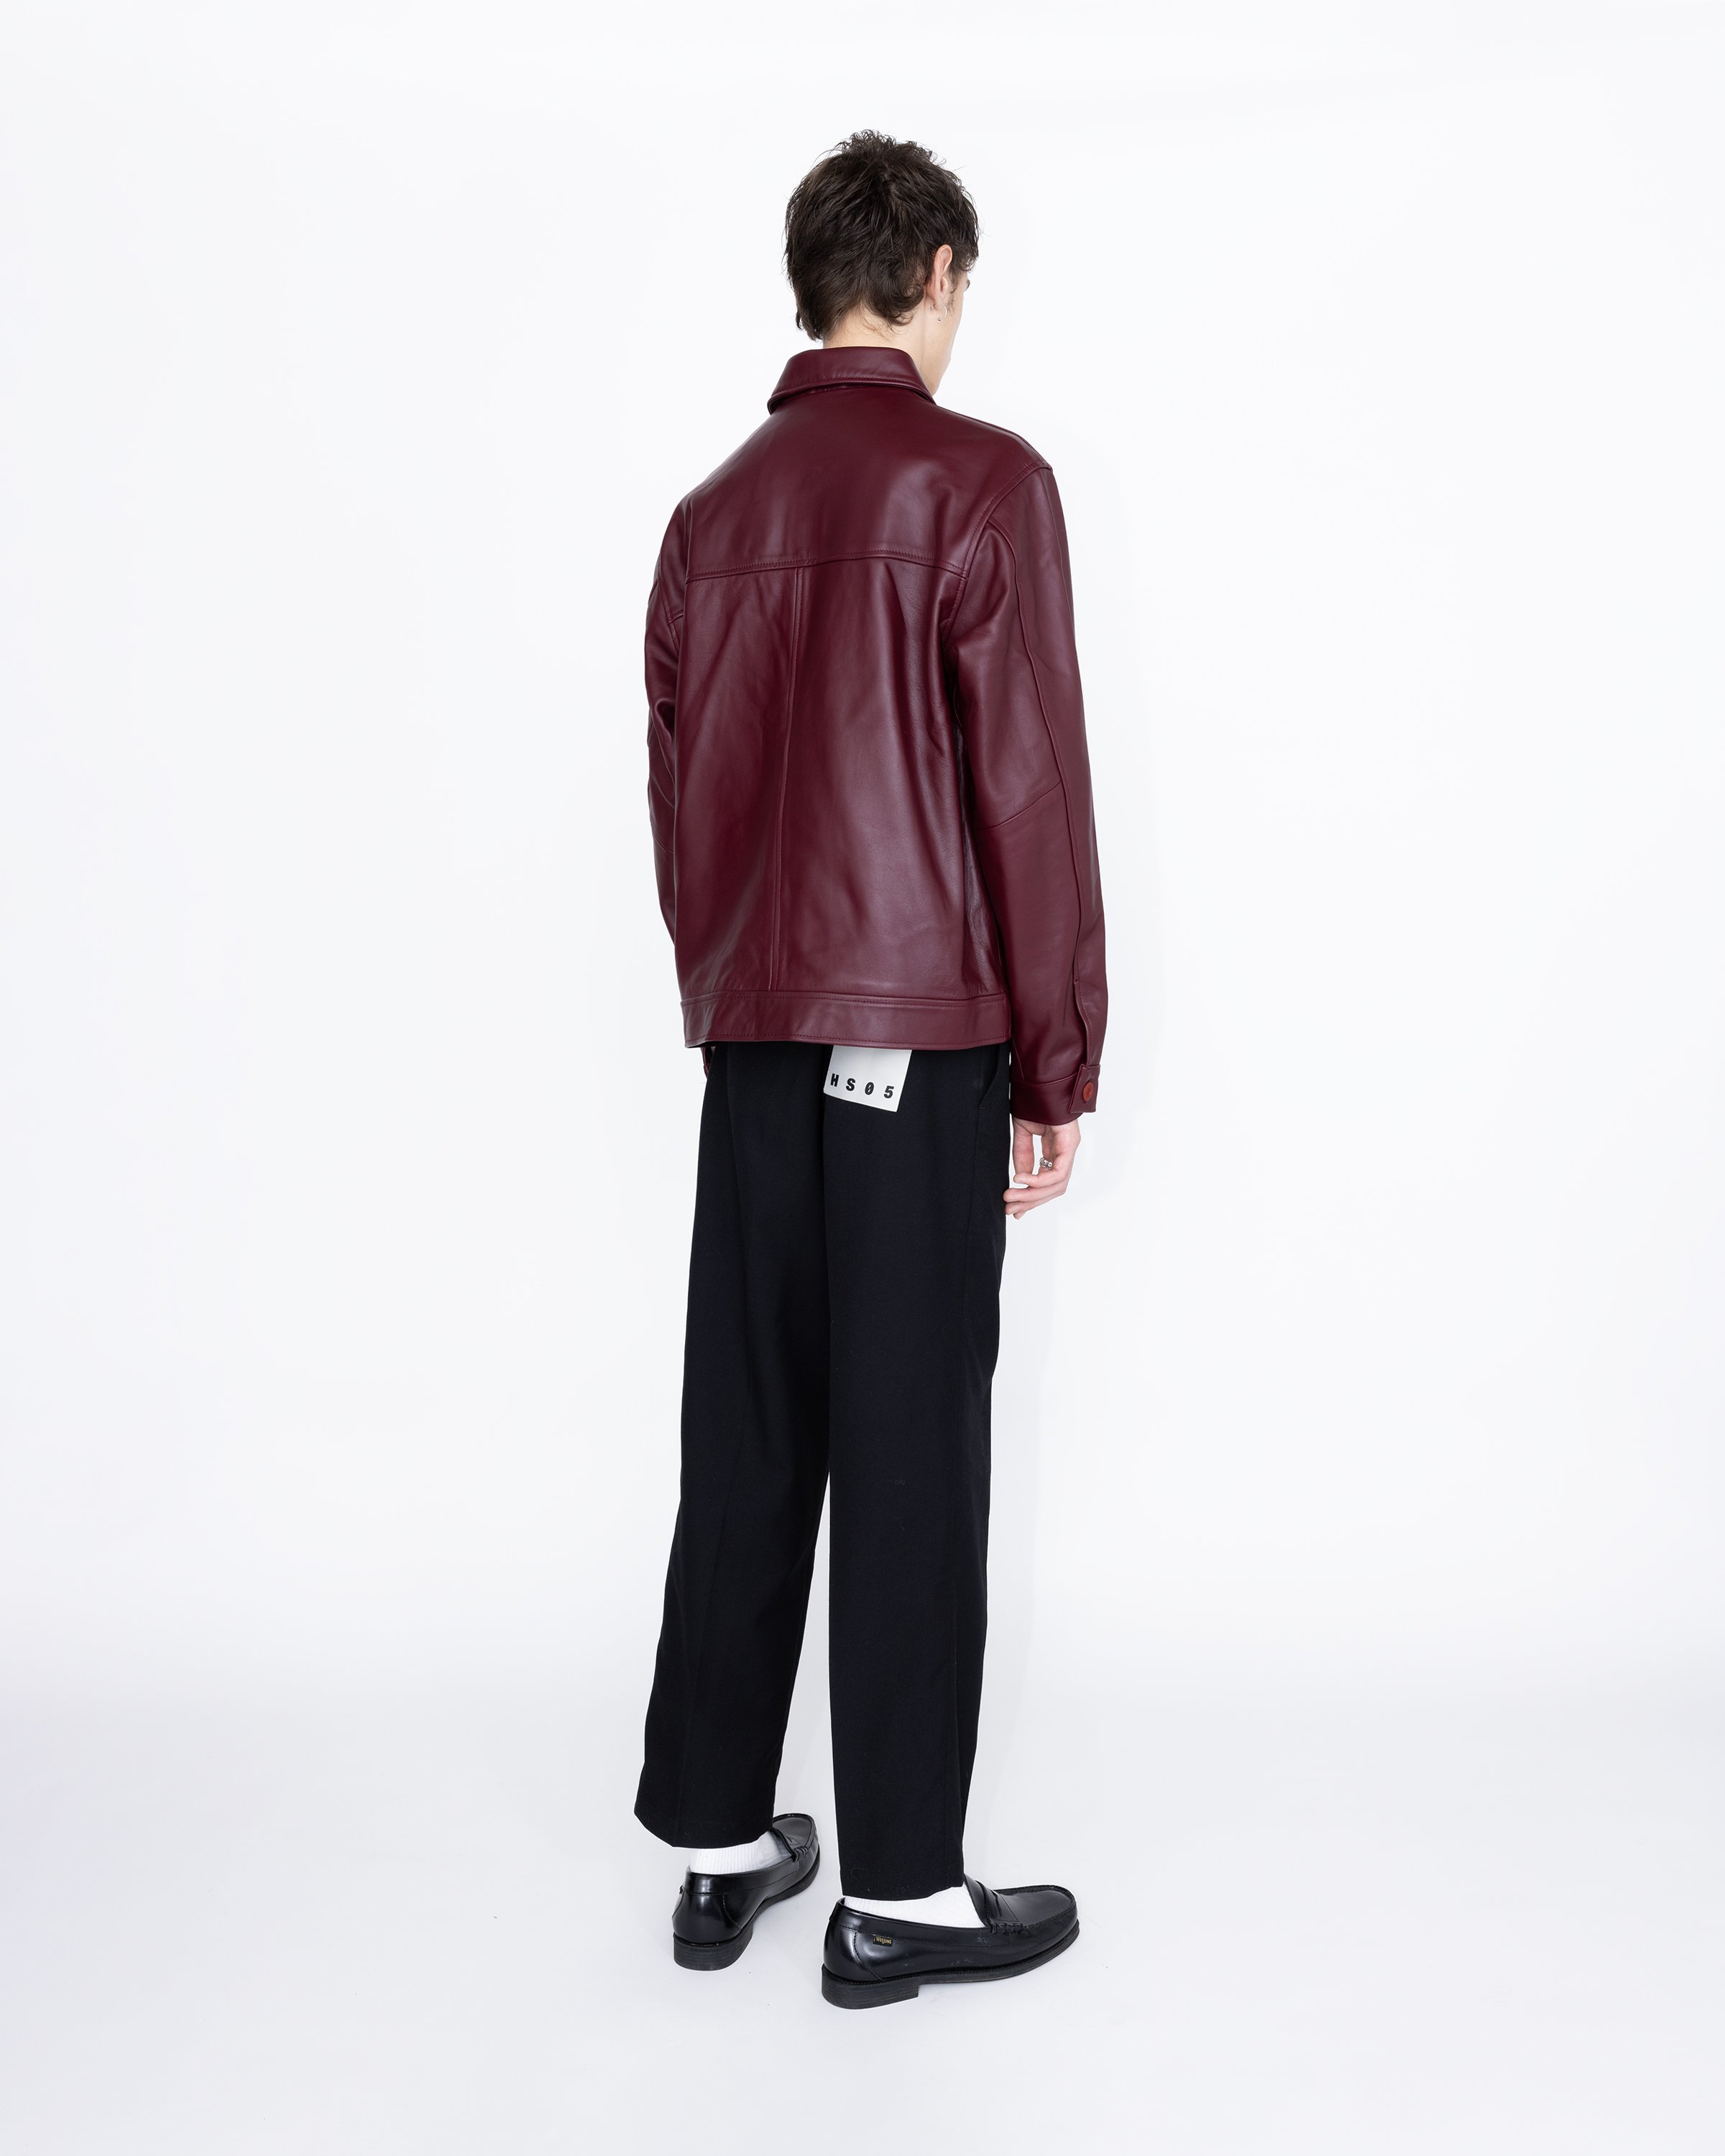 Highsnobiety HS05 - Leather Jacket Burgundy - Clothing - Red - Image 5